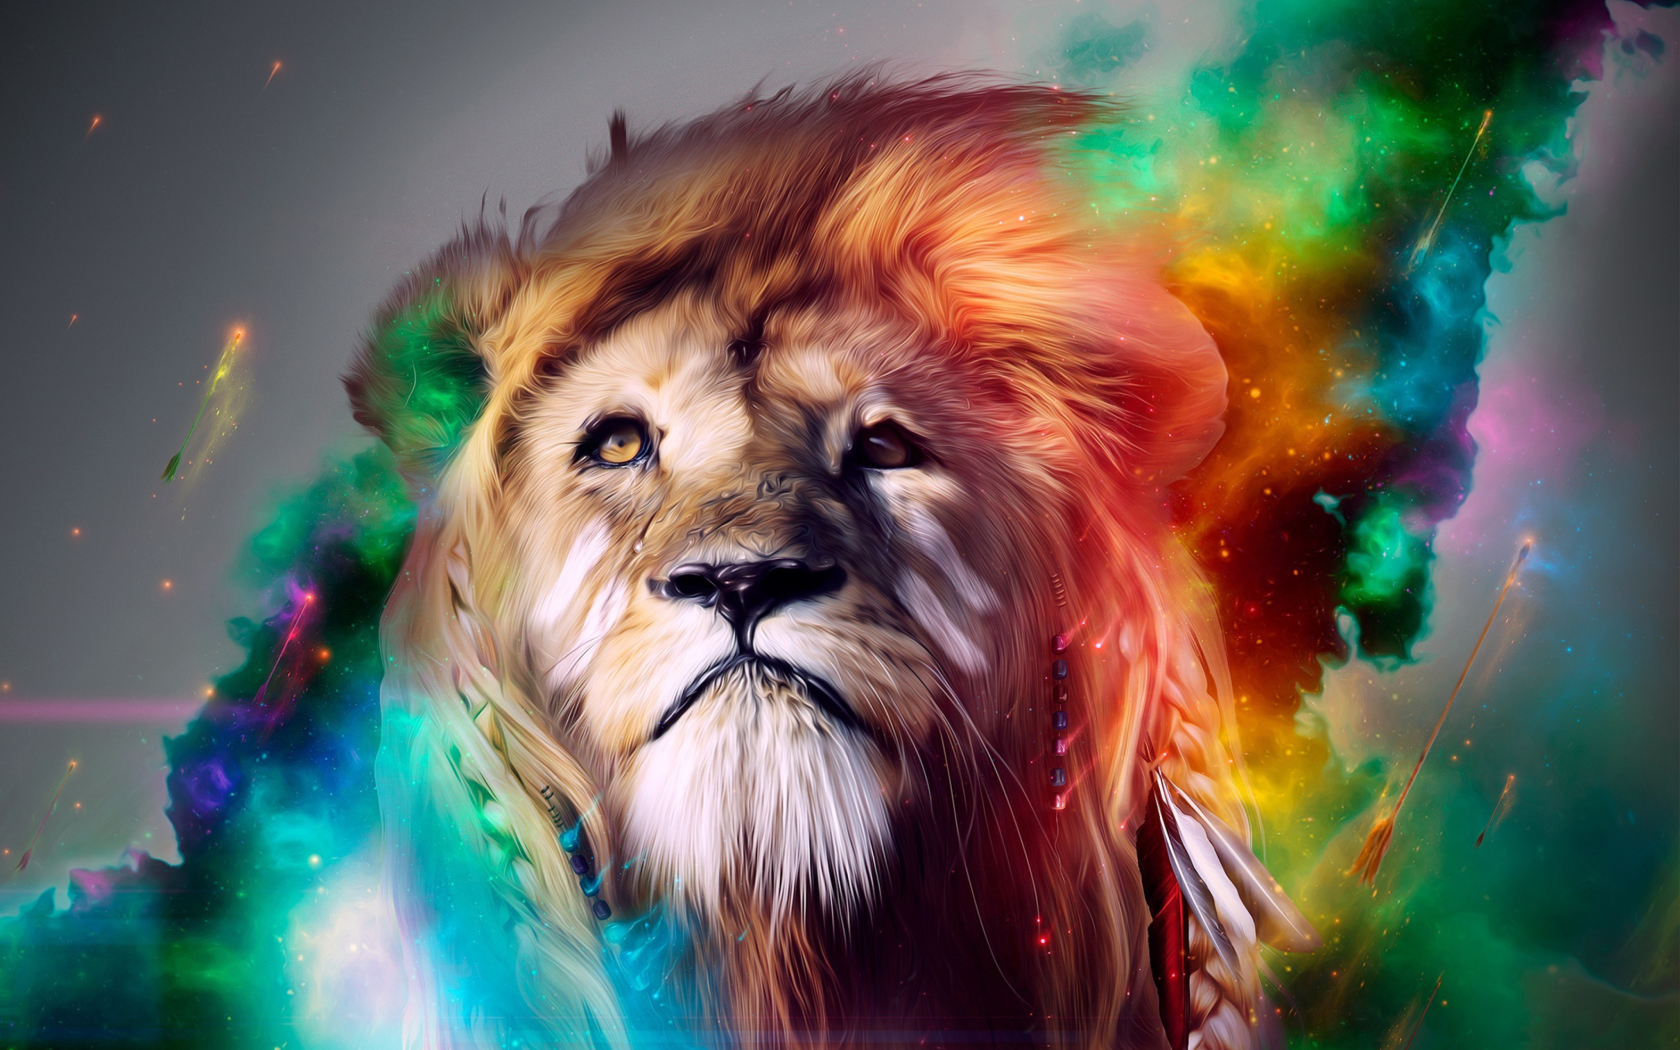 Lion Art wallpaper 1680x1050